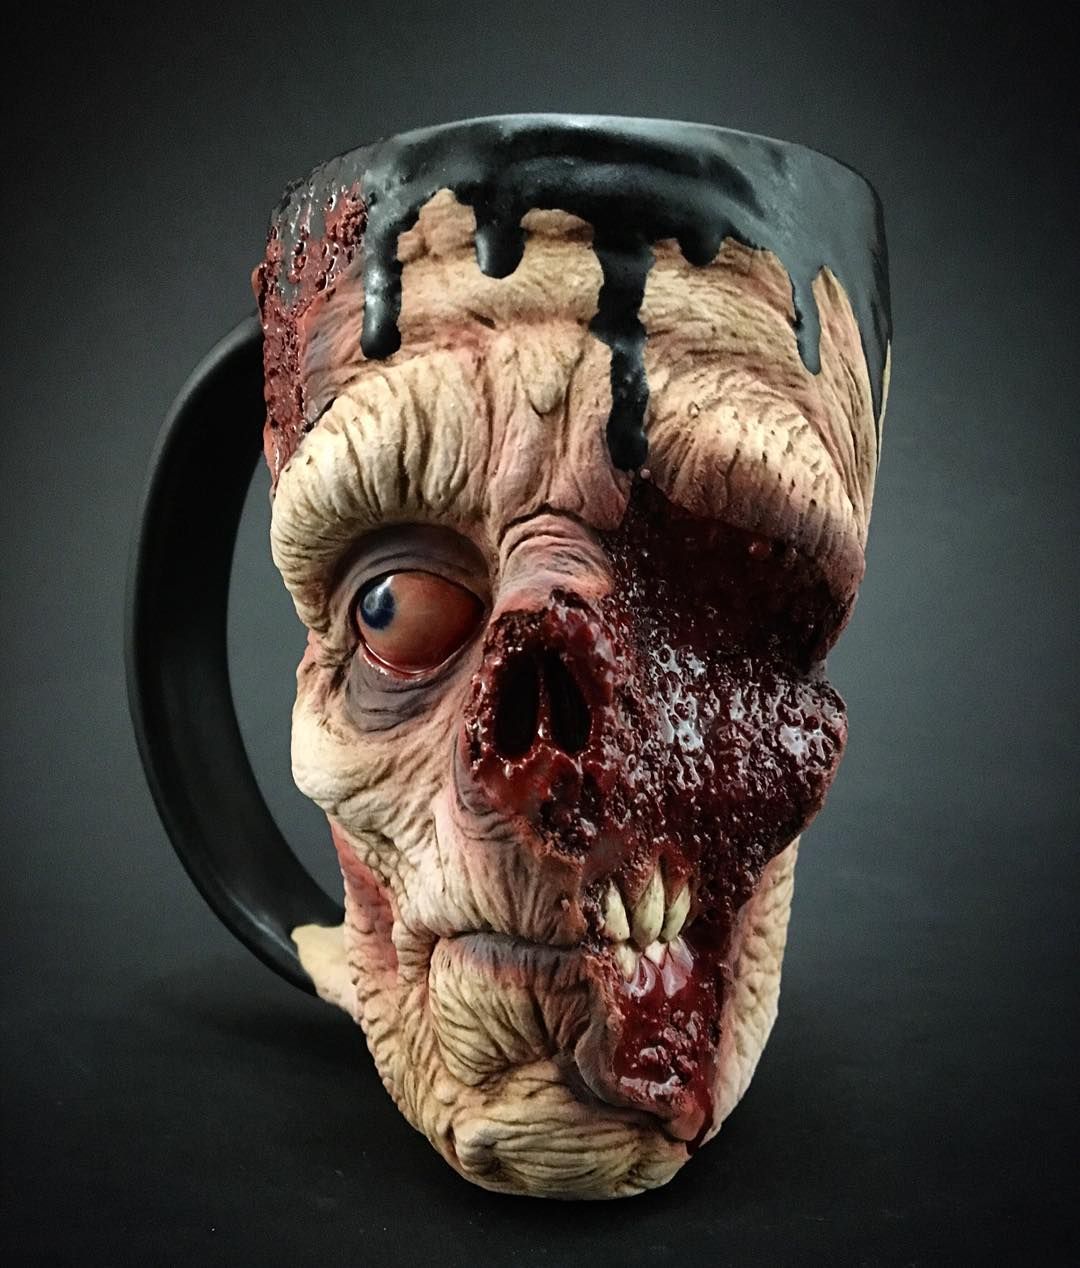 horror-zombie-mug-pottery-slow-joe-kevin-turkey-merck-2